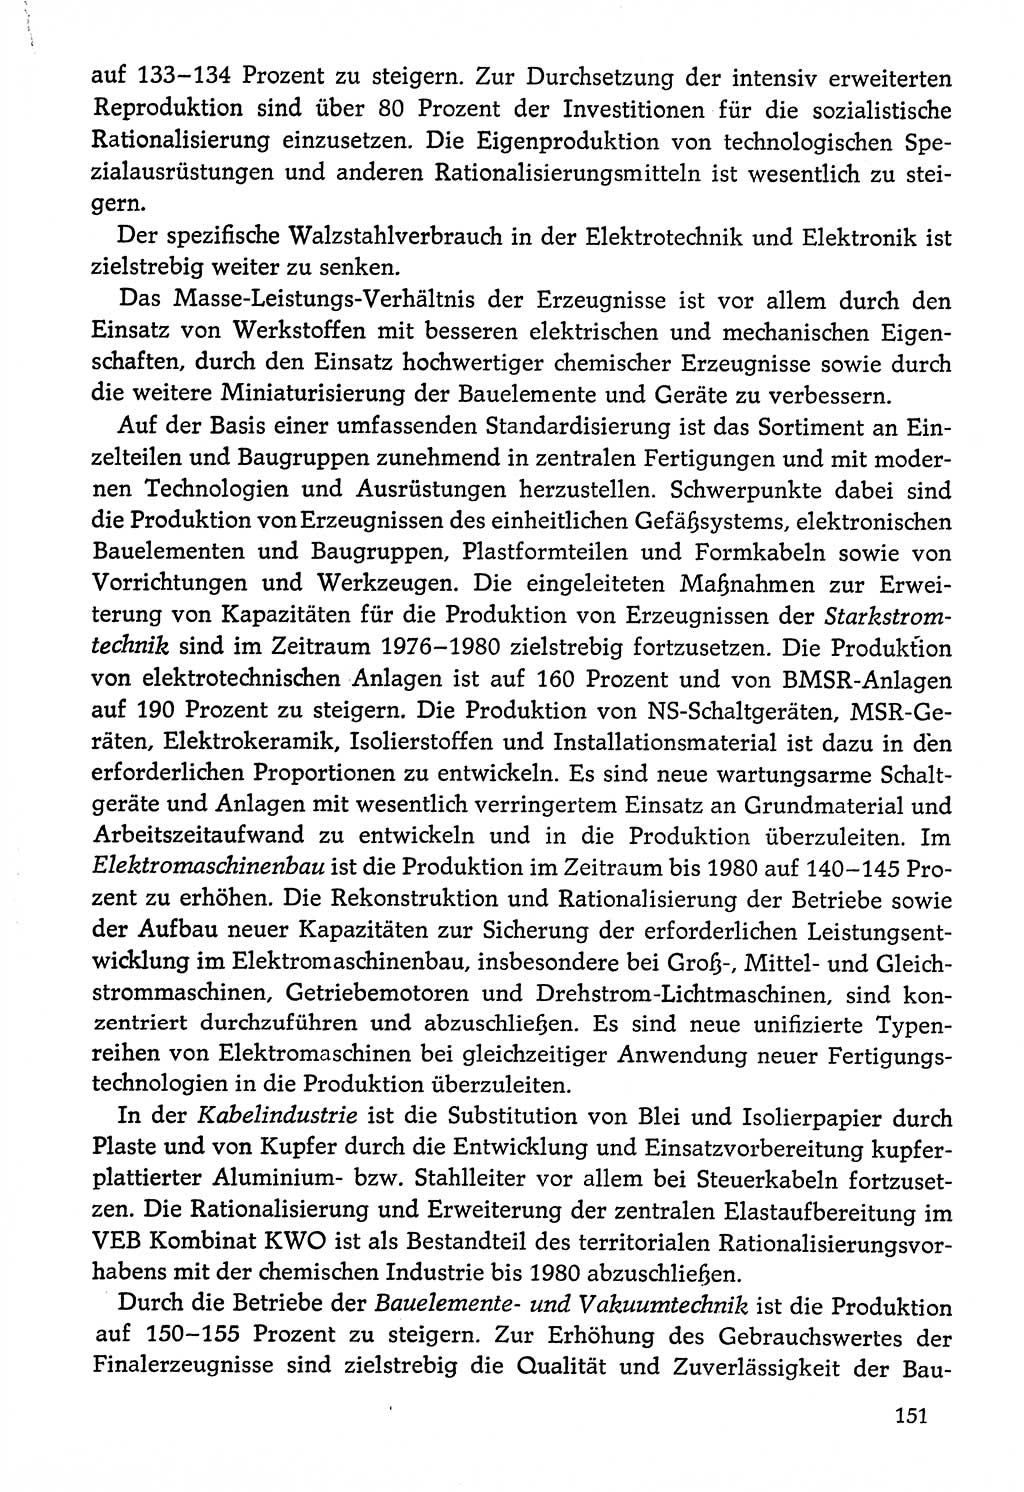 Dokumente der Sozialistischen Einheitspartei Deutschlands (SED) [Deutsche Demokratische Republik (DDR)] 1976-1977, Seite 151 (Dok. SED DDR 1976-1977, S. 151)